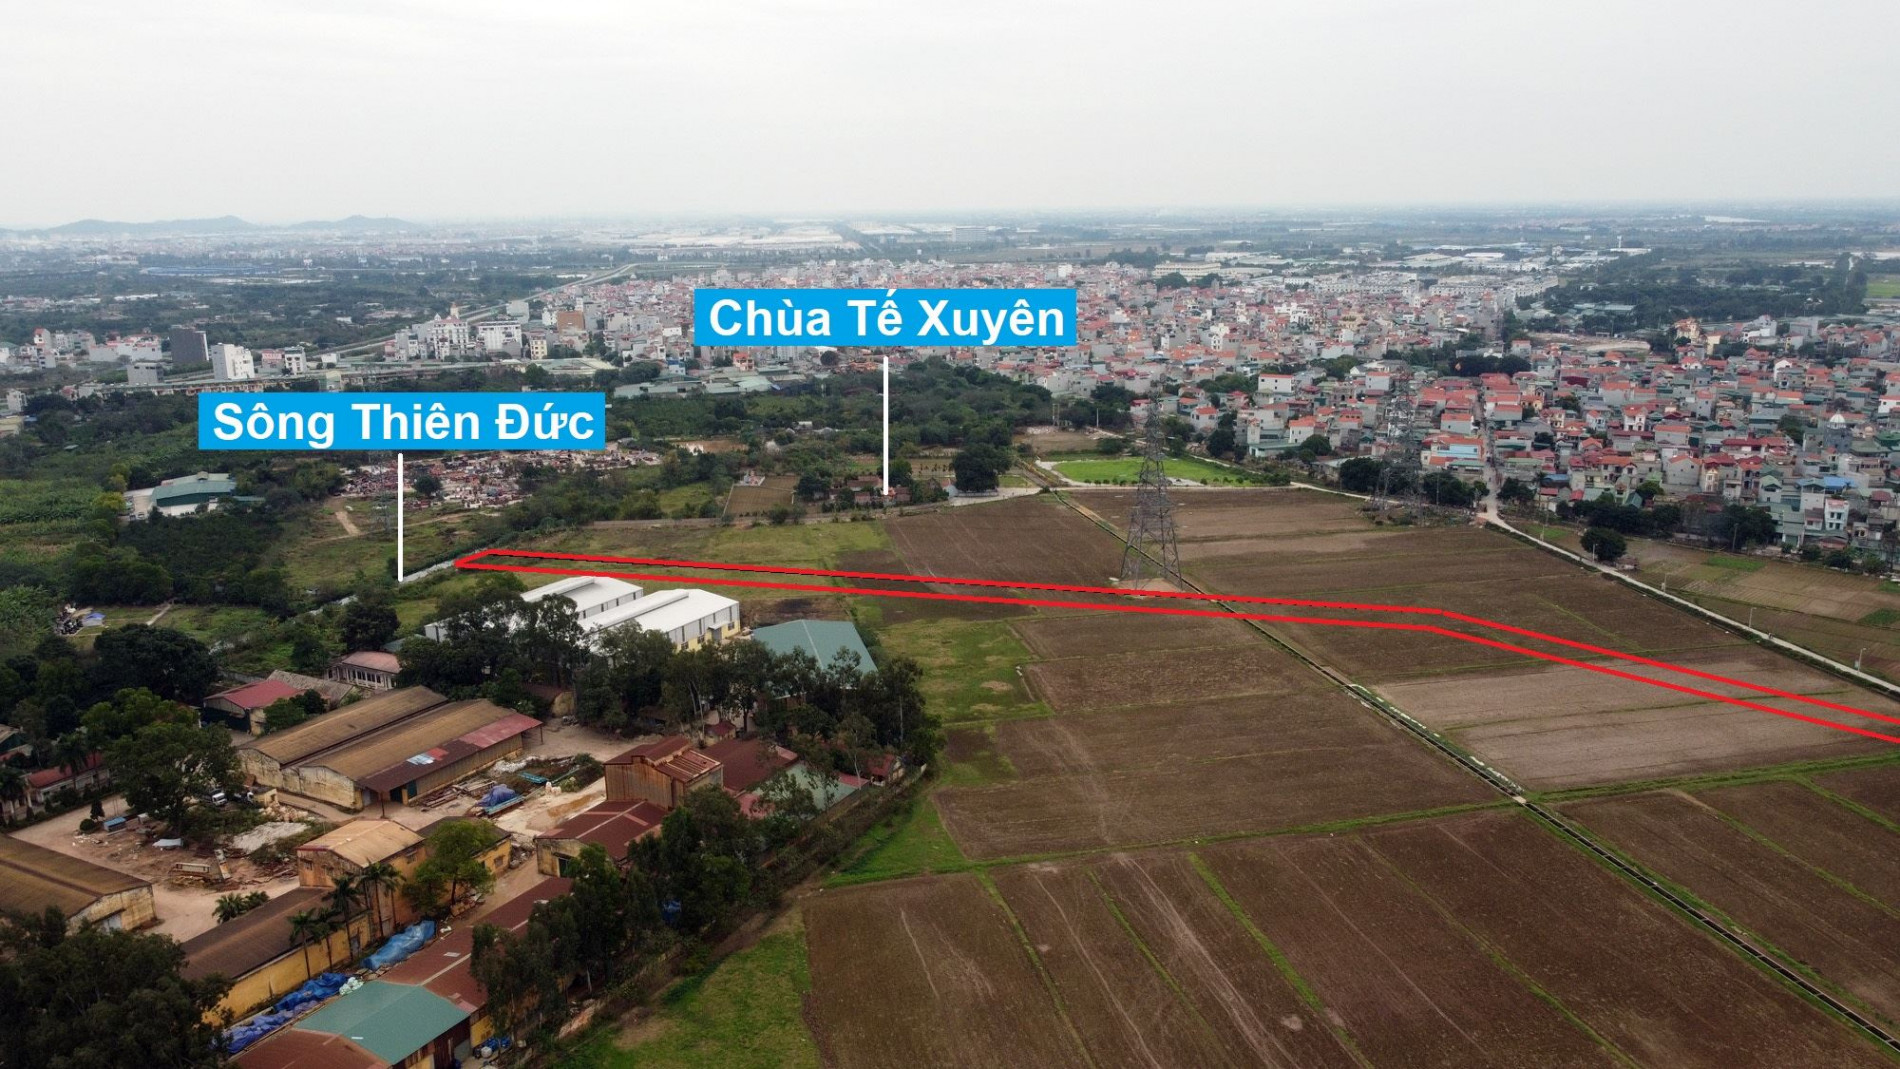 Đường sẽ mở theo quy hoạch ở xã Đình Xuyên, Gia Lâm, Hà Nội (phần 3)